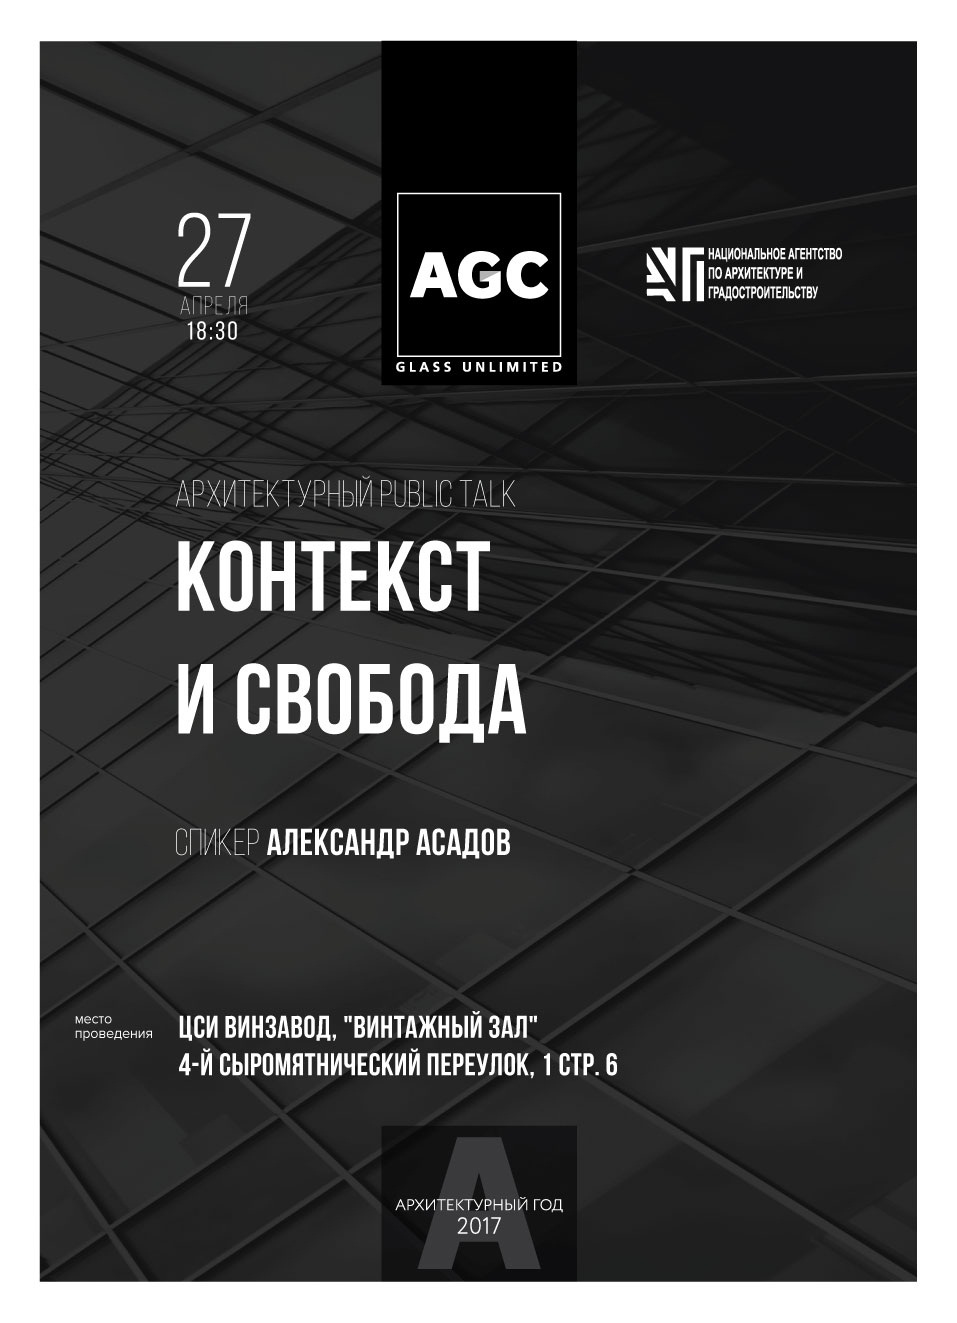 Мастер-класс архитектора Александра Асадова пройдет в Москве